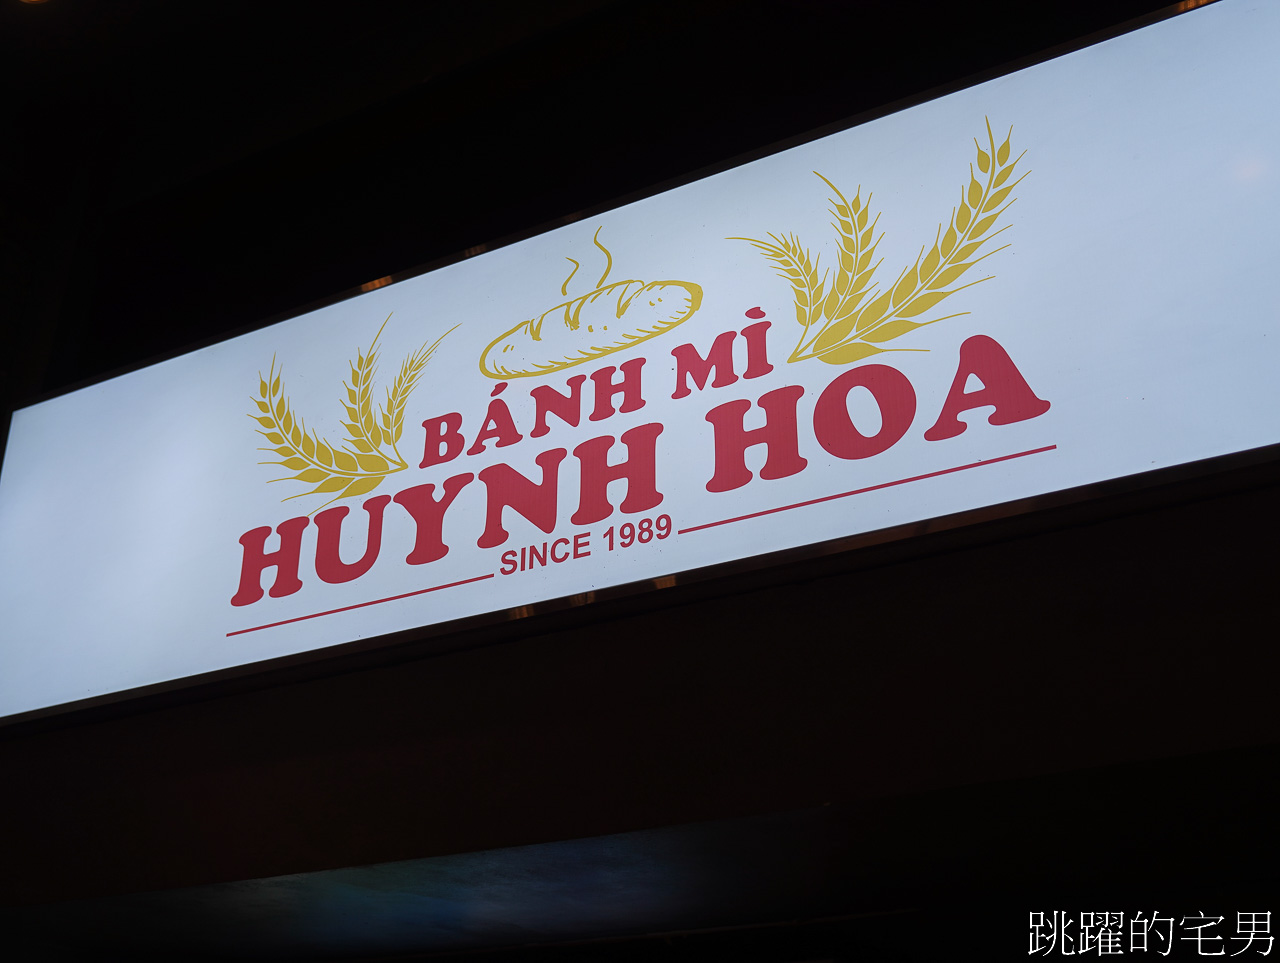 [Bánh Mì Huynh Hoa]絕對是越南美食推薦-在地人都買爆越南法國麵包，30年胡志明美食推薦